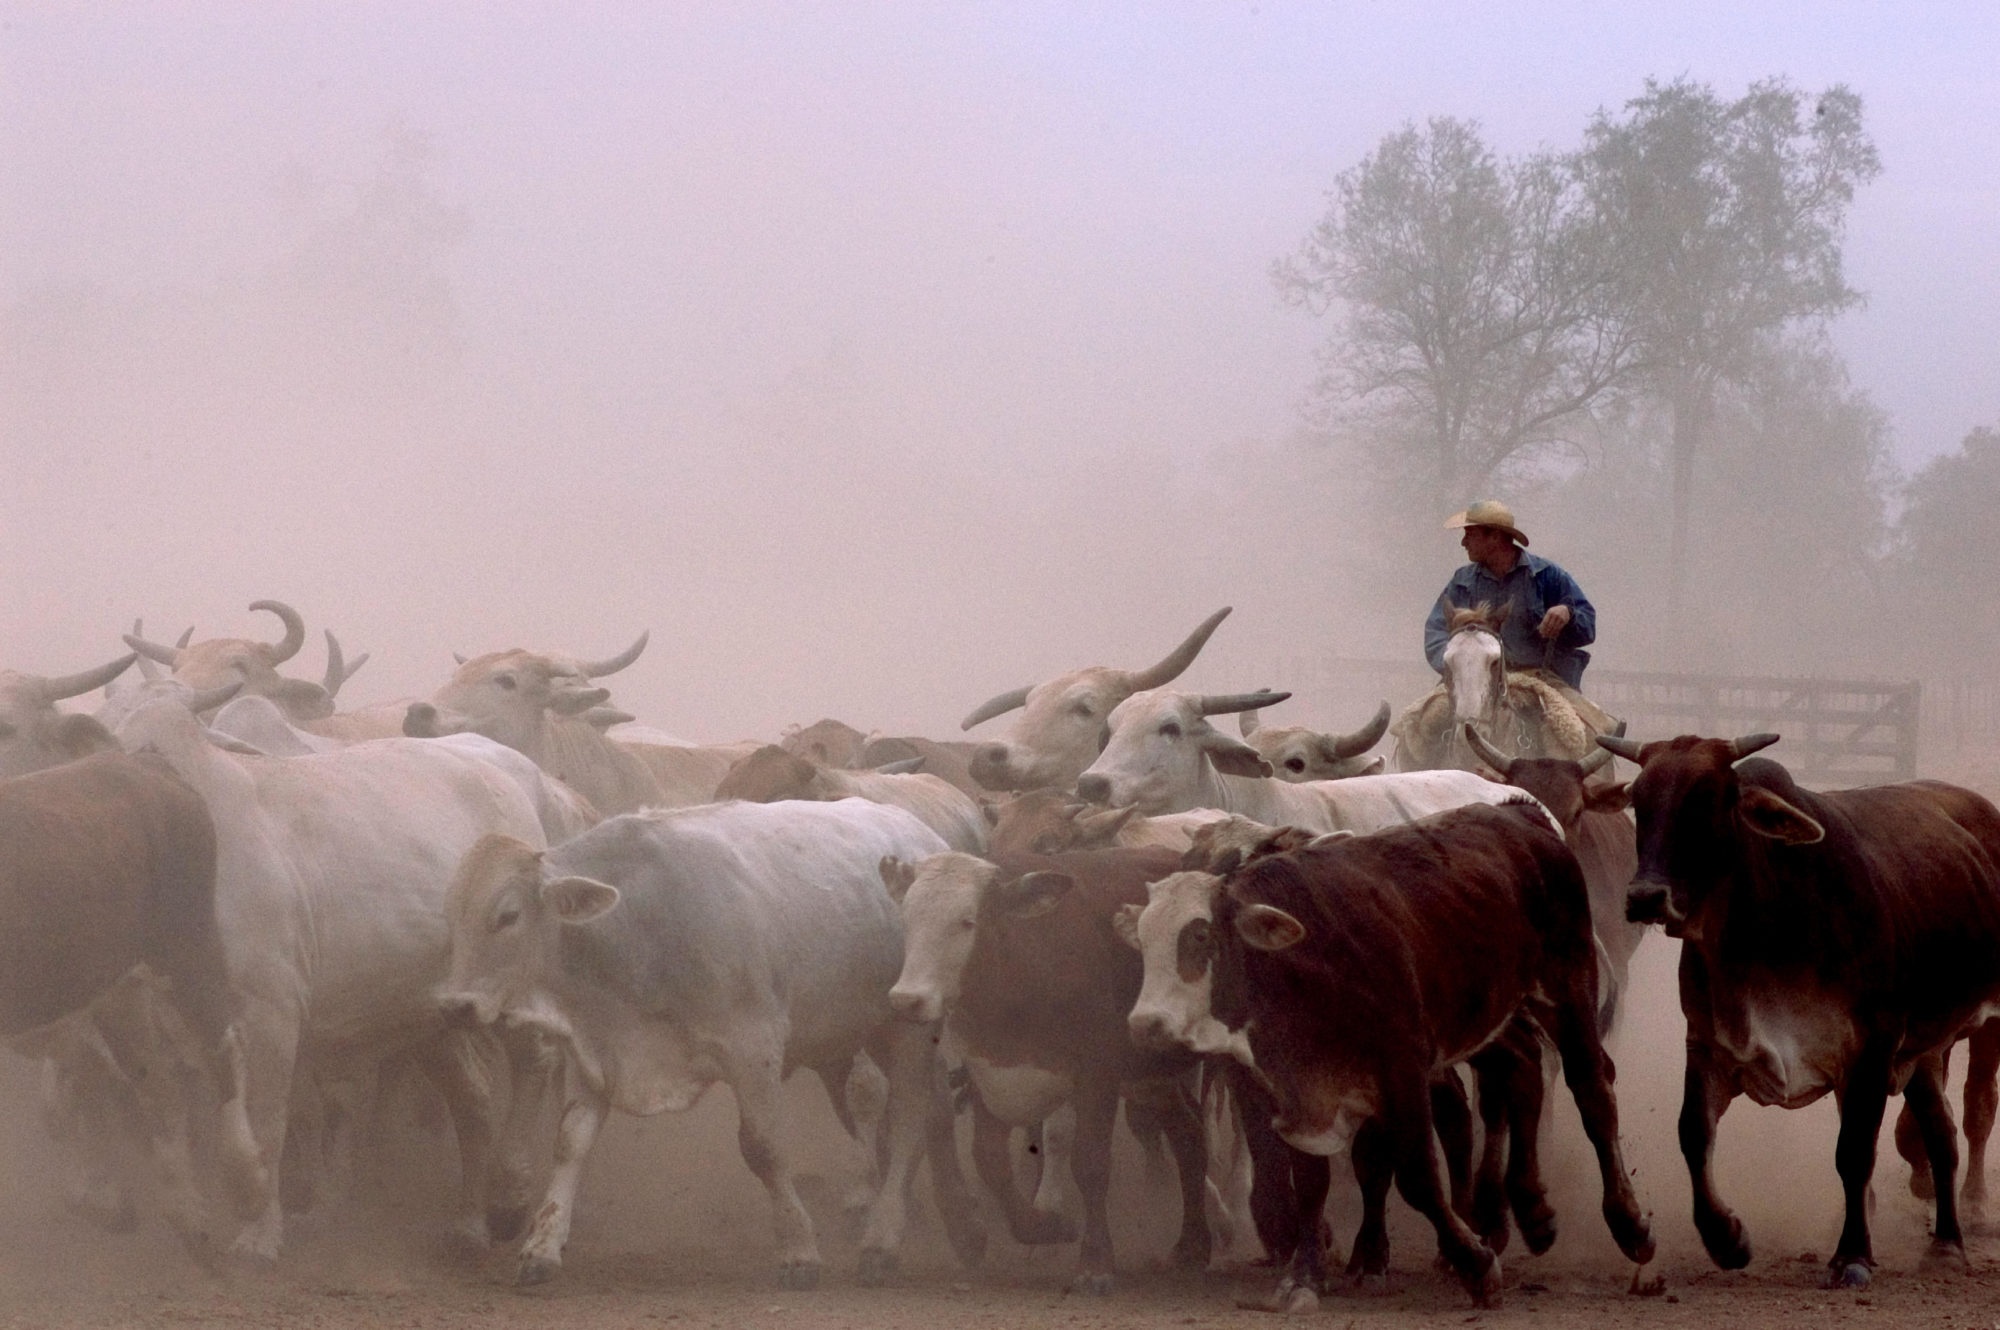 <p>China e Paraguai poderiam estabelecer um comércio de carne bovina, mas o reconhecimento diplomático de Taiwan entre os paraguaios é um obstáculo para o agronegócio paraguaio (imagem: <a href="https://www.alamy.com/another-great-business-of-the-mennonite-colonies-is-breeding-beef-cattle-which-is-freely-fed-into-the-great-plains-and-is-controlled-by-real-cowboys-image179581406.html?pv=1&amp;stamp=2&amp;imageid=1986A7F1-7F31-4FF5-AC16-D034636CA3CC&amp;p=177376&amp;n=0&amp;orientation=0&amp;pn=1&amp;searchtype=0&amp;IsFromSearch=1&amp;srch=foo%3dbar%26st%3d0%26pn%3d1%26ps%3d100%26sortby%3d3%26resultview%3dsortbyRelevant%26npgs%3d0%26qt%3dparaguay%2520beef%26qt_raw%3dparaguay%2520beef%26lic%3d3%26mr%3d0%26pr%3d0%26ot%3d0%26creative%3d%26ag%3d0%26hc%3d0%26pc%3d%26blackwhite%3d%26cutout%3d%26tbar%3d1%26et%3d0x000000000000000000000%26vp%3d0%26loc%3d0%26imgt%3d0%26dtfr%3d%26dtto%3d%26size%3d0xFF%26archive%3d1%26groupid%3d%26pseudoid%3d%26a%3d%26cdid%3d%26cdsrt%3d%26name%3d%26qn%3d%26apalib%3d%26apalic%3d%26lightbox%3d%26gname%3d%26gtype%3d%26xstx%3d0%26simid%3d%26saveQry%3d%26editorial%3d1%26nu%3d%26t%3d%26edoptin%3d%26customgeoip%3dGB%26cap%3d1%26cbstore%3d1%26vd%3d0%26lb%3d%26fi%3d2%26edrf%3d%26ispremium%3d1%26flip%3d0%26pl%3d">Federico Tovoli / Alamy</a>)</p>
<p>&nbsp;</p>